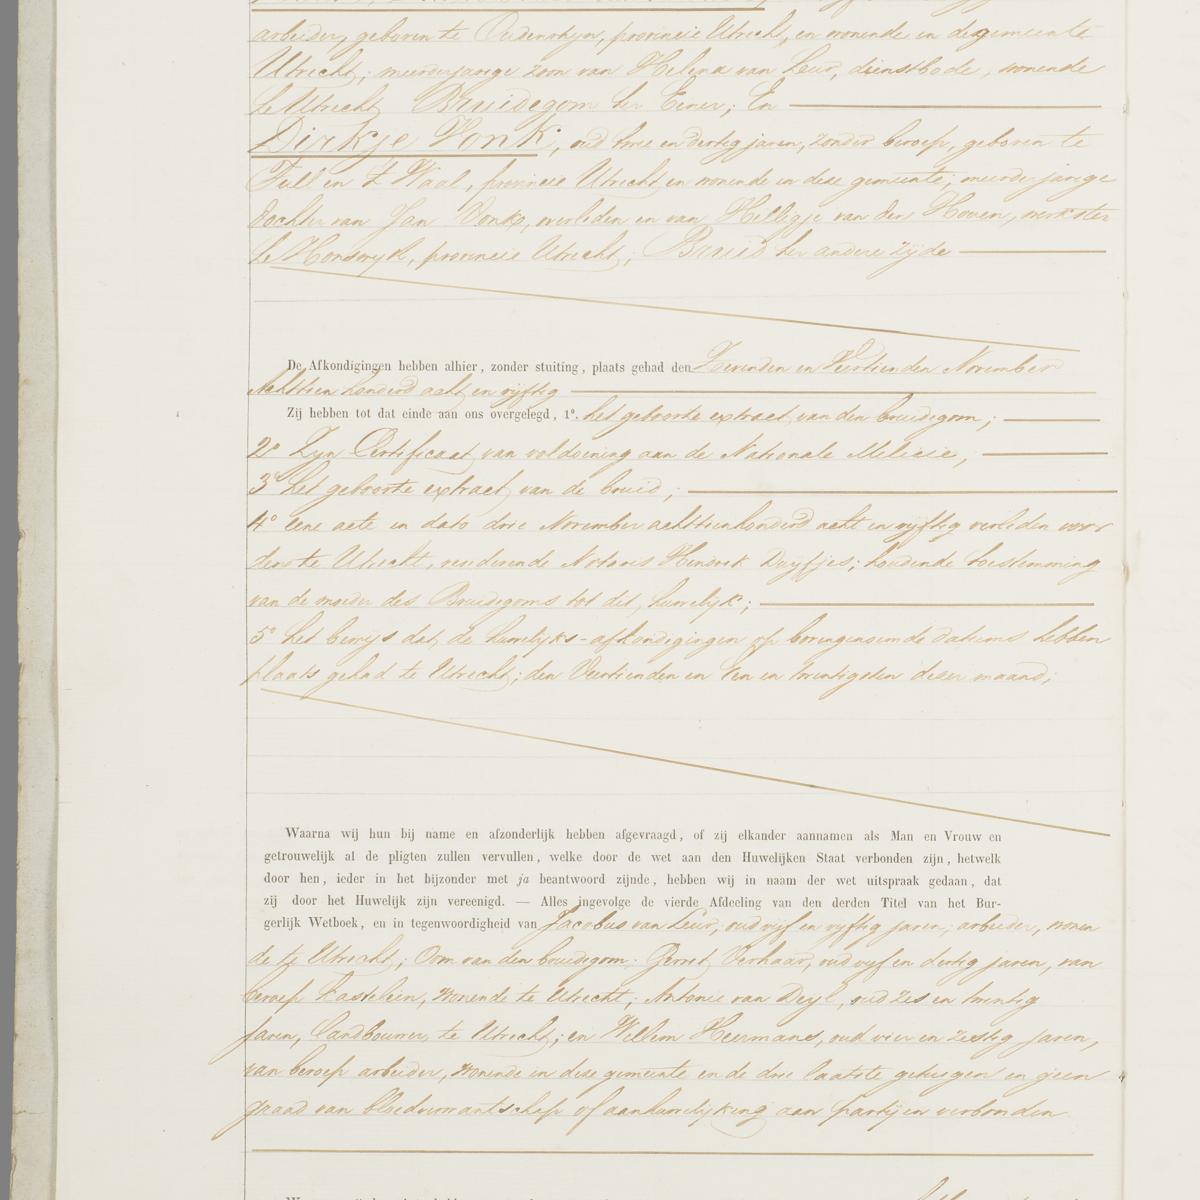 Civil registry of marriages, Maartensdijk, 1858, record 14